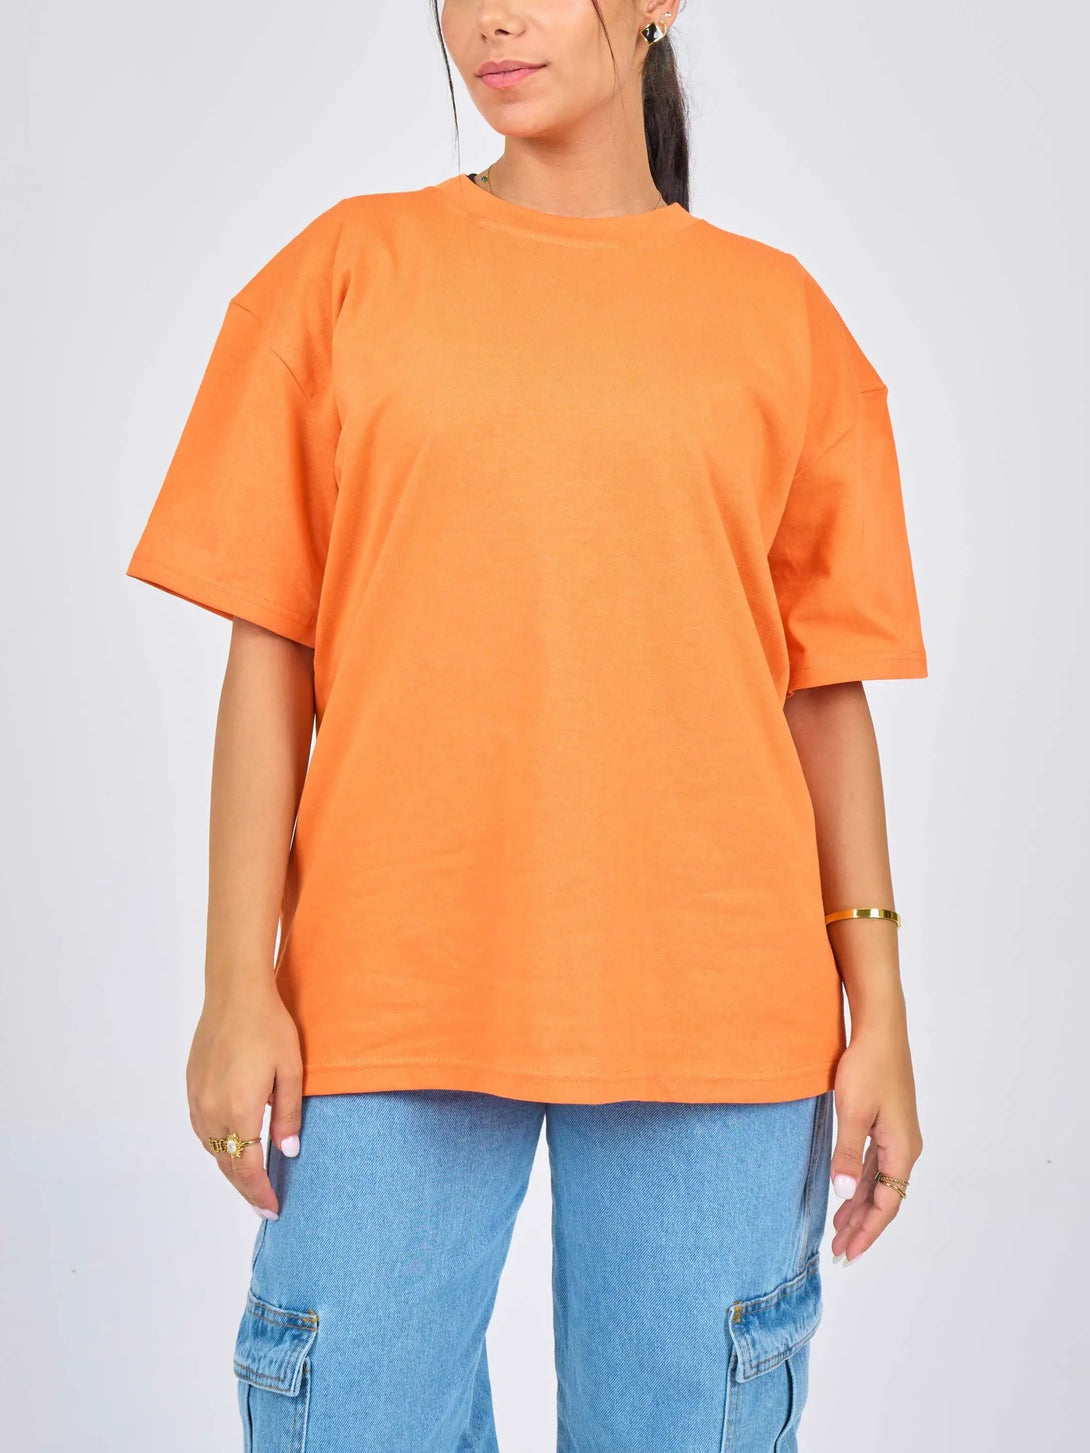 Oversized Orange Cotton T-Shirt.